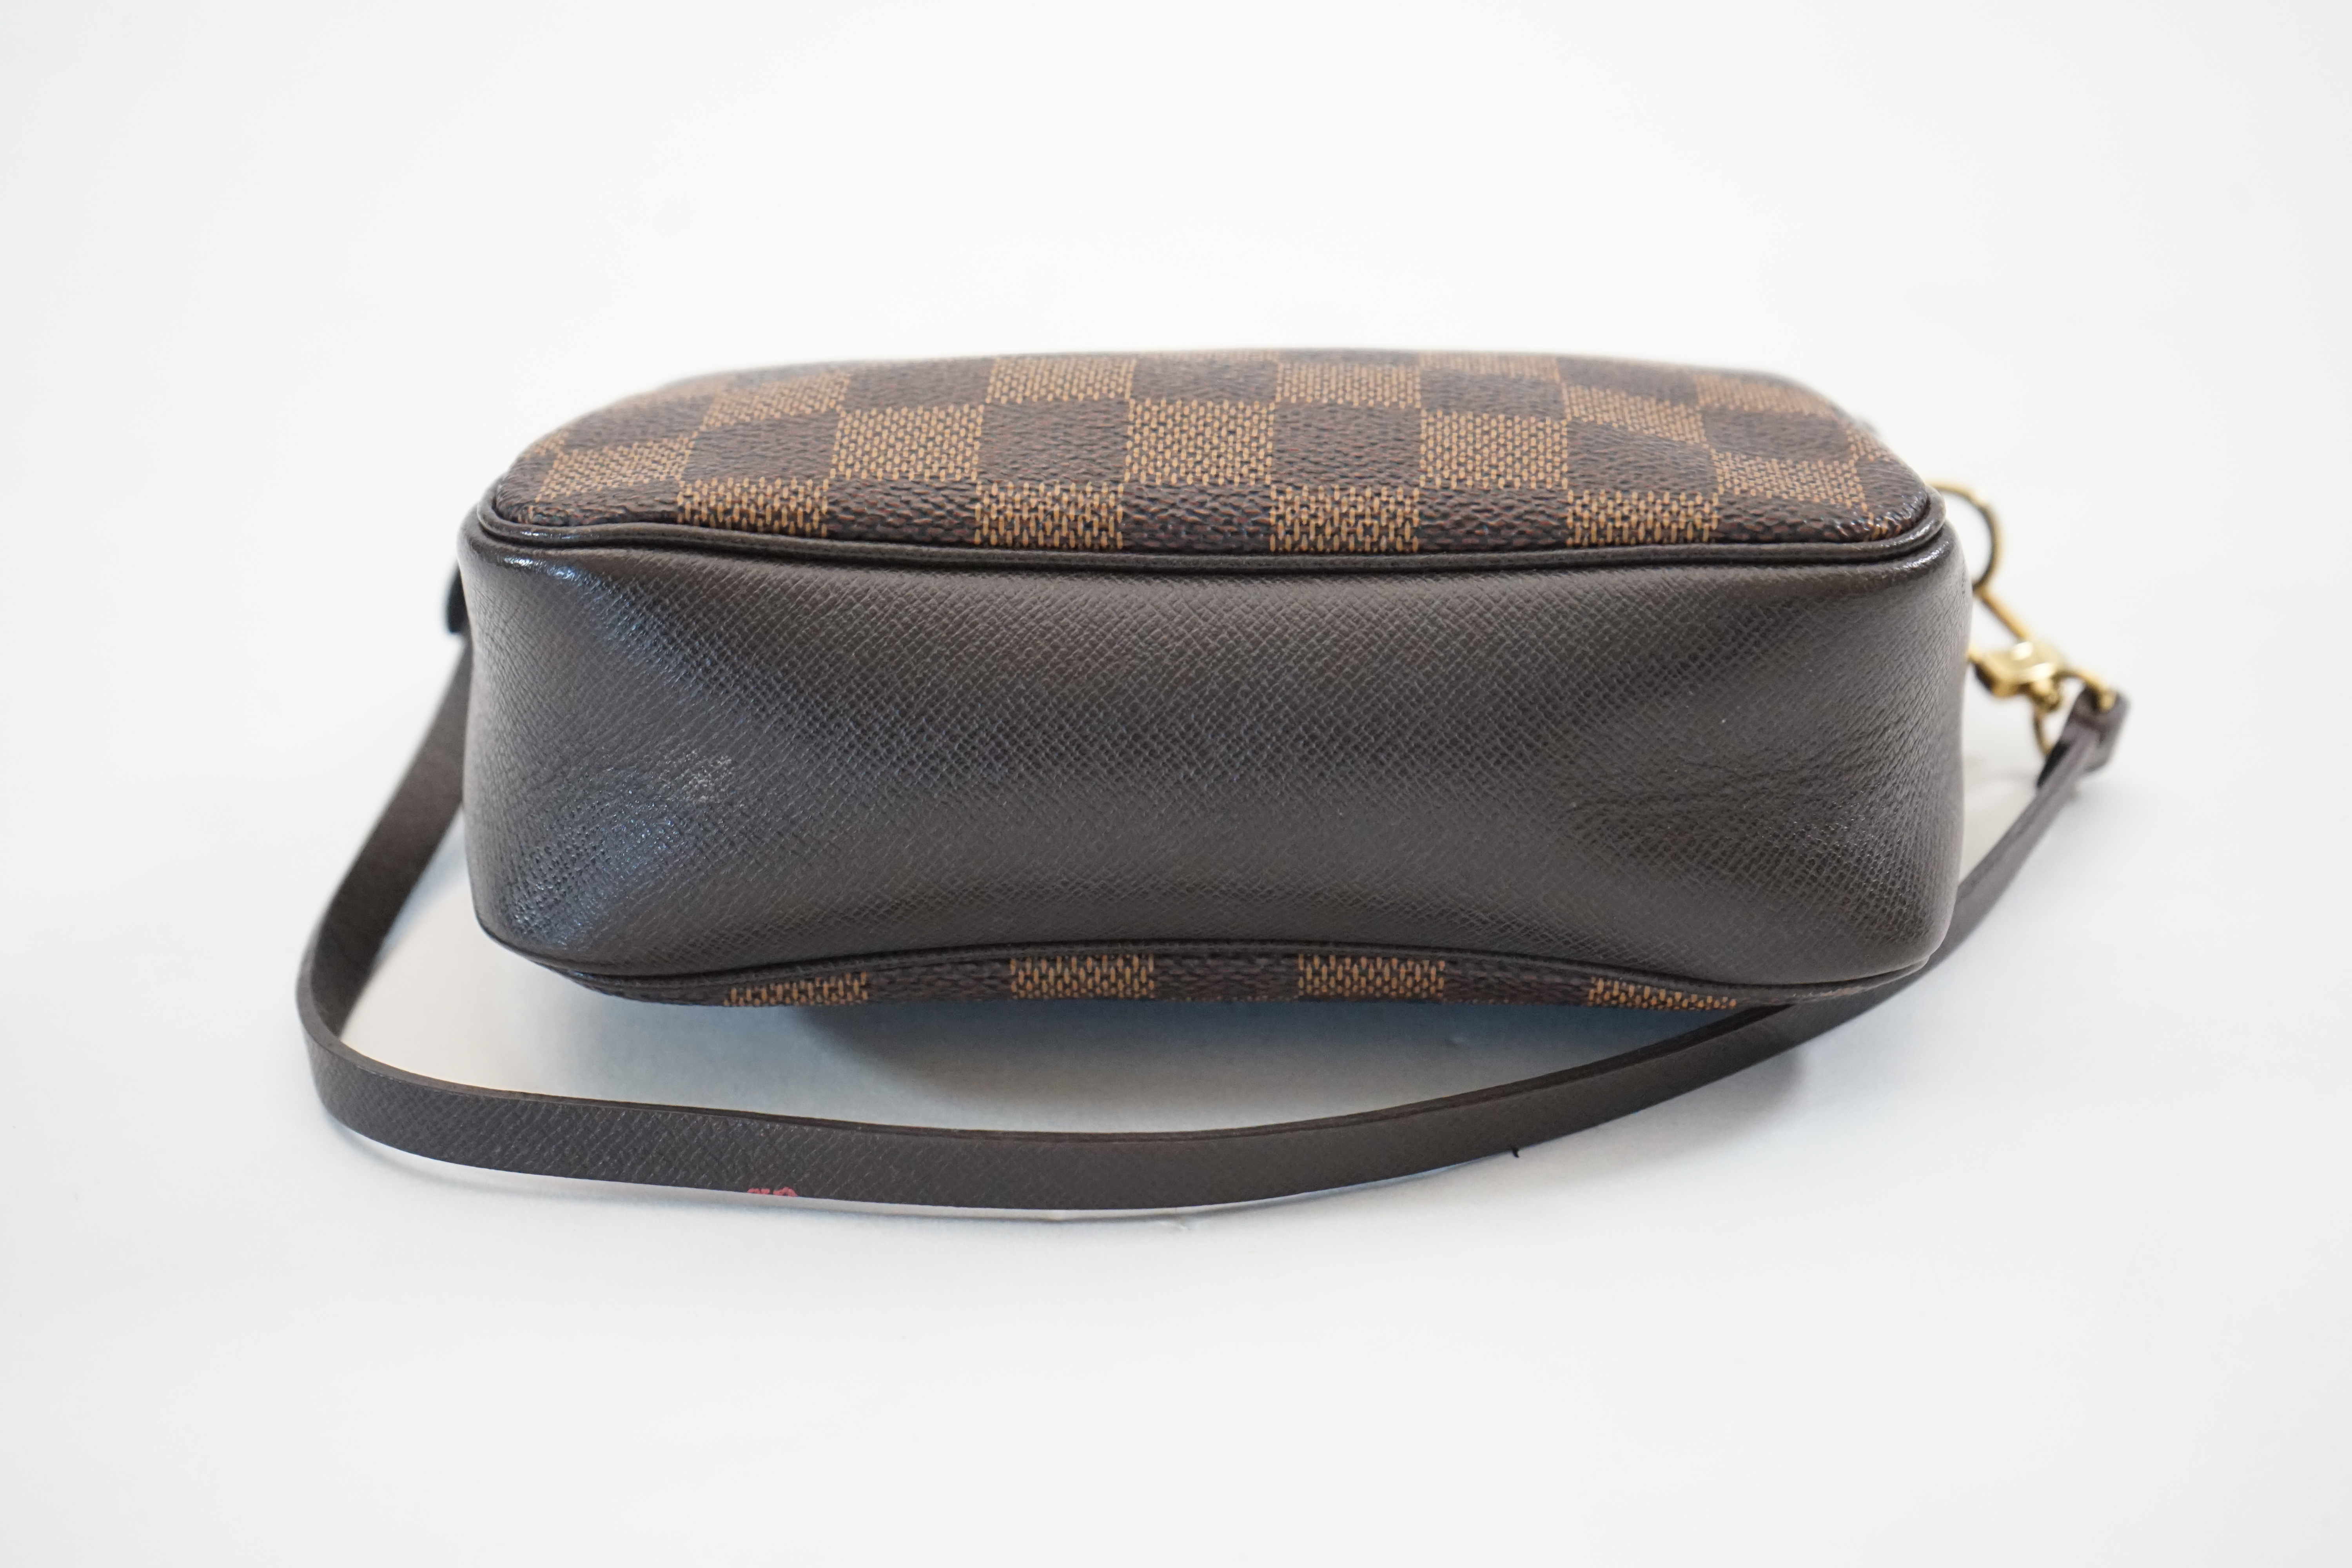 A Louis Vuitton Damier Ebene Pochette accessories bag, width 16cm, max depth 5cm, height 14cm